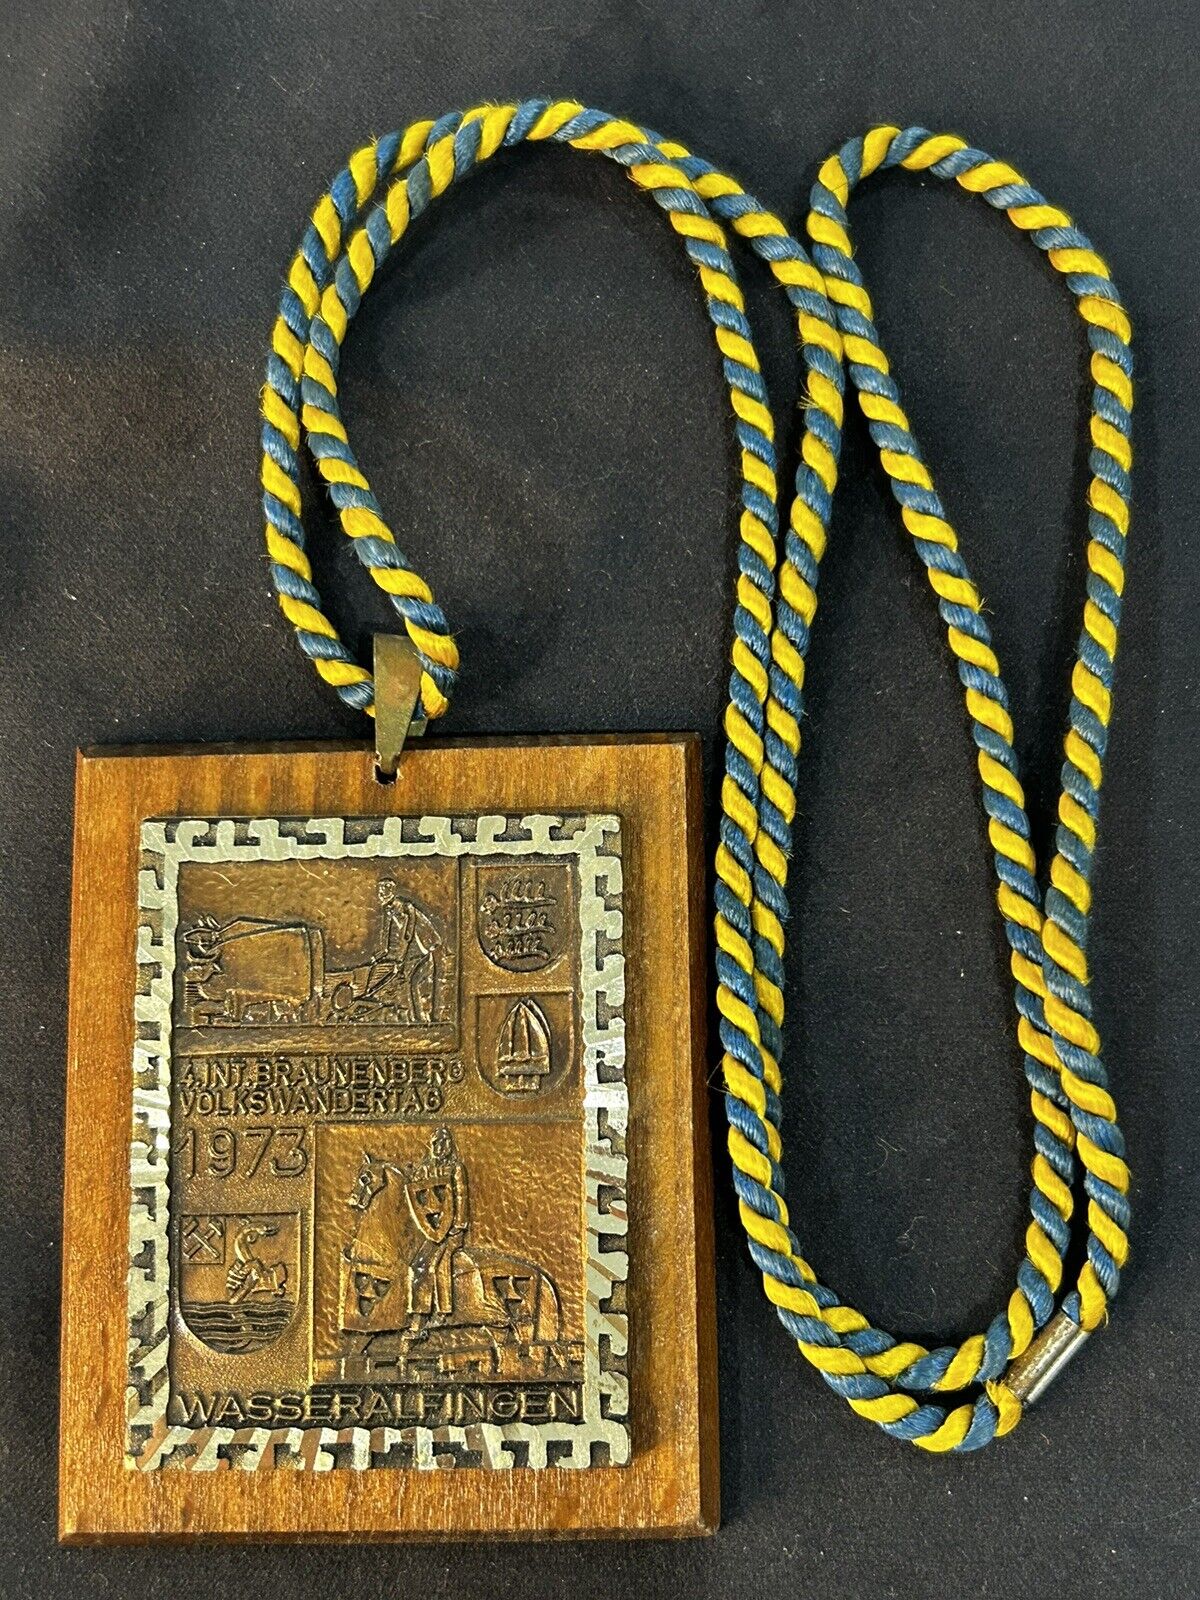 1973 German Necklace Badge 4 Int Braunenberg Volkswandertag Wasseralfingen Wood